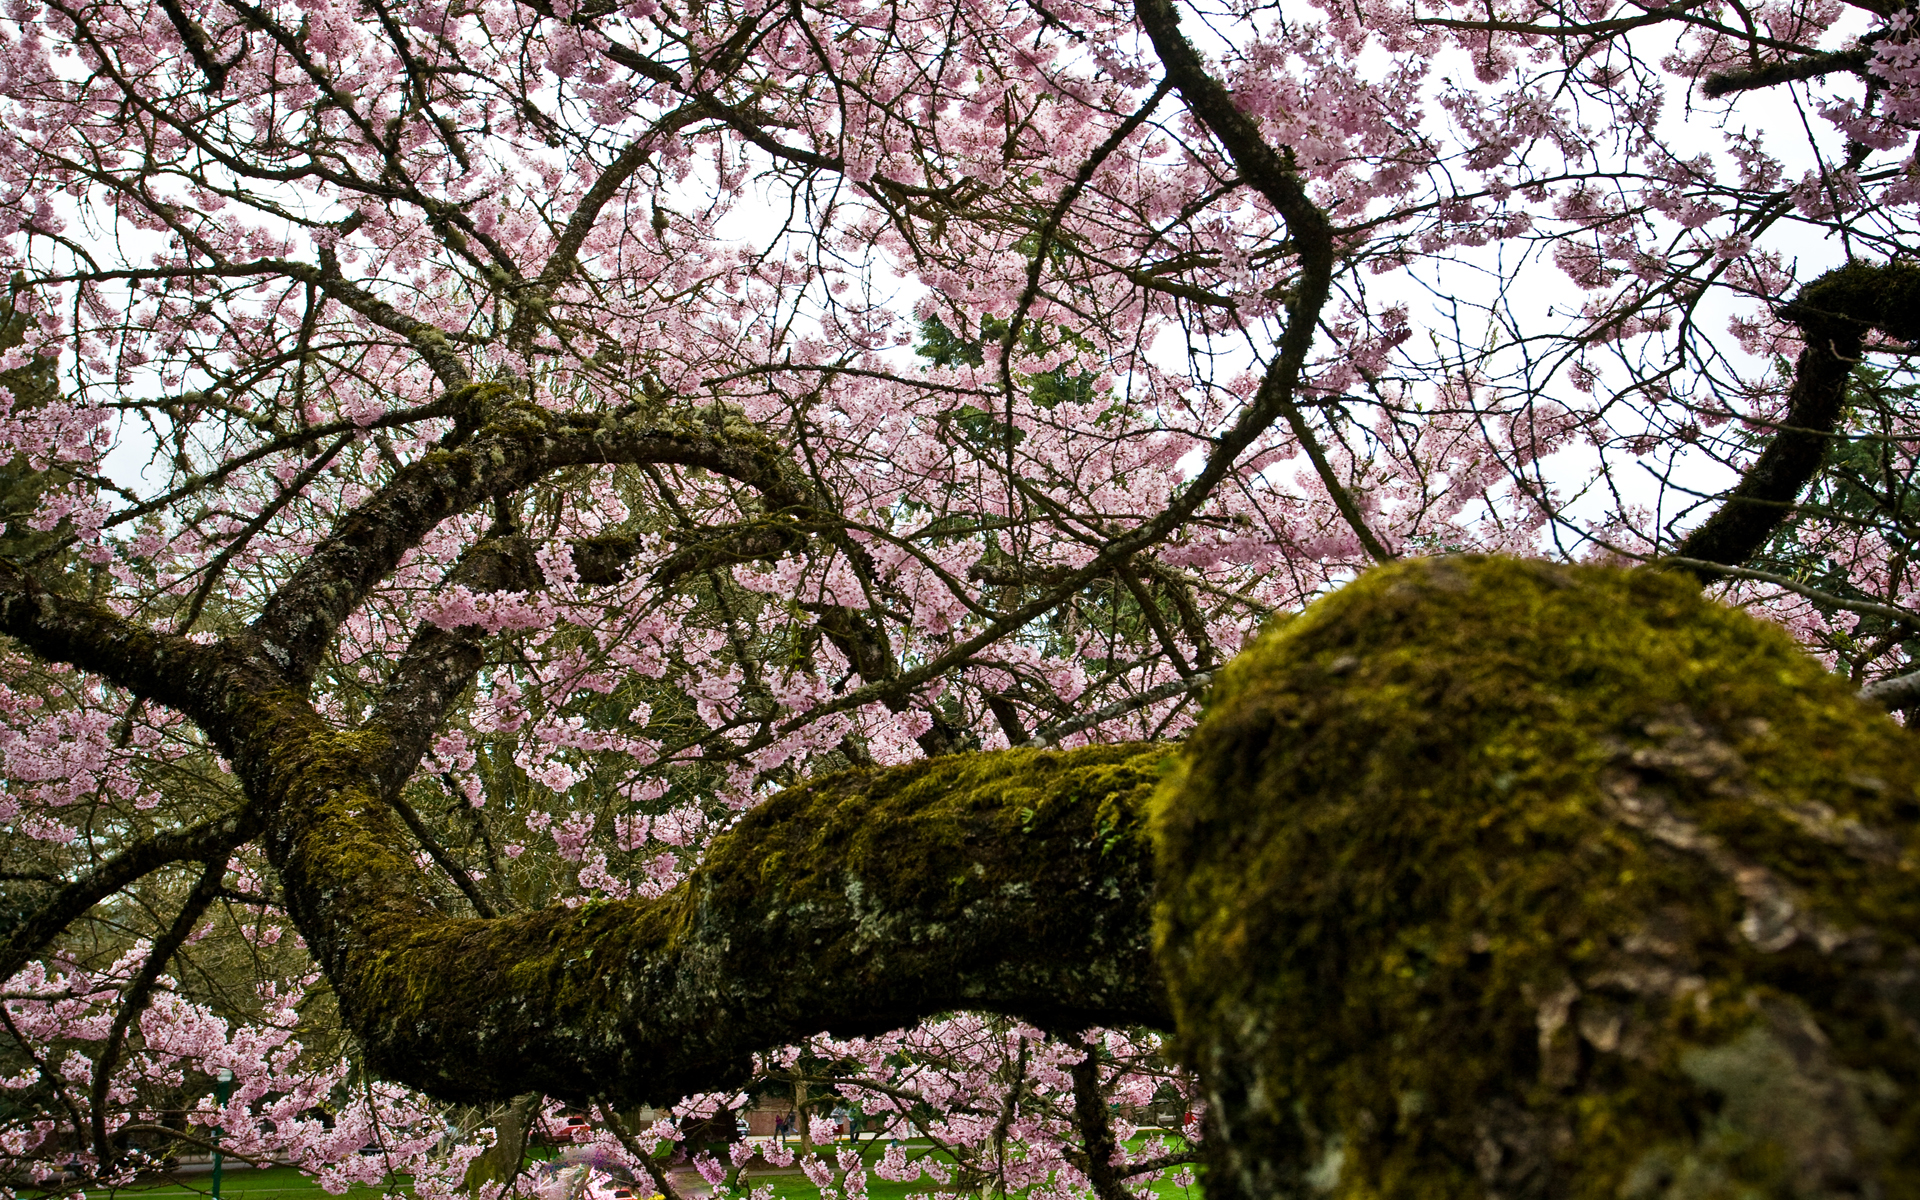 blossoms, moss, depth of field, pink flowers, flowered trees - desktop wallpaper